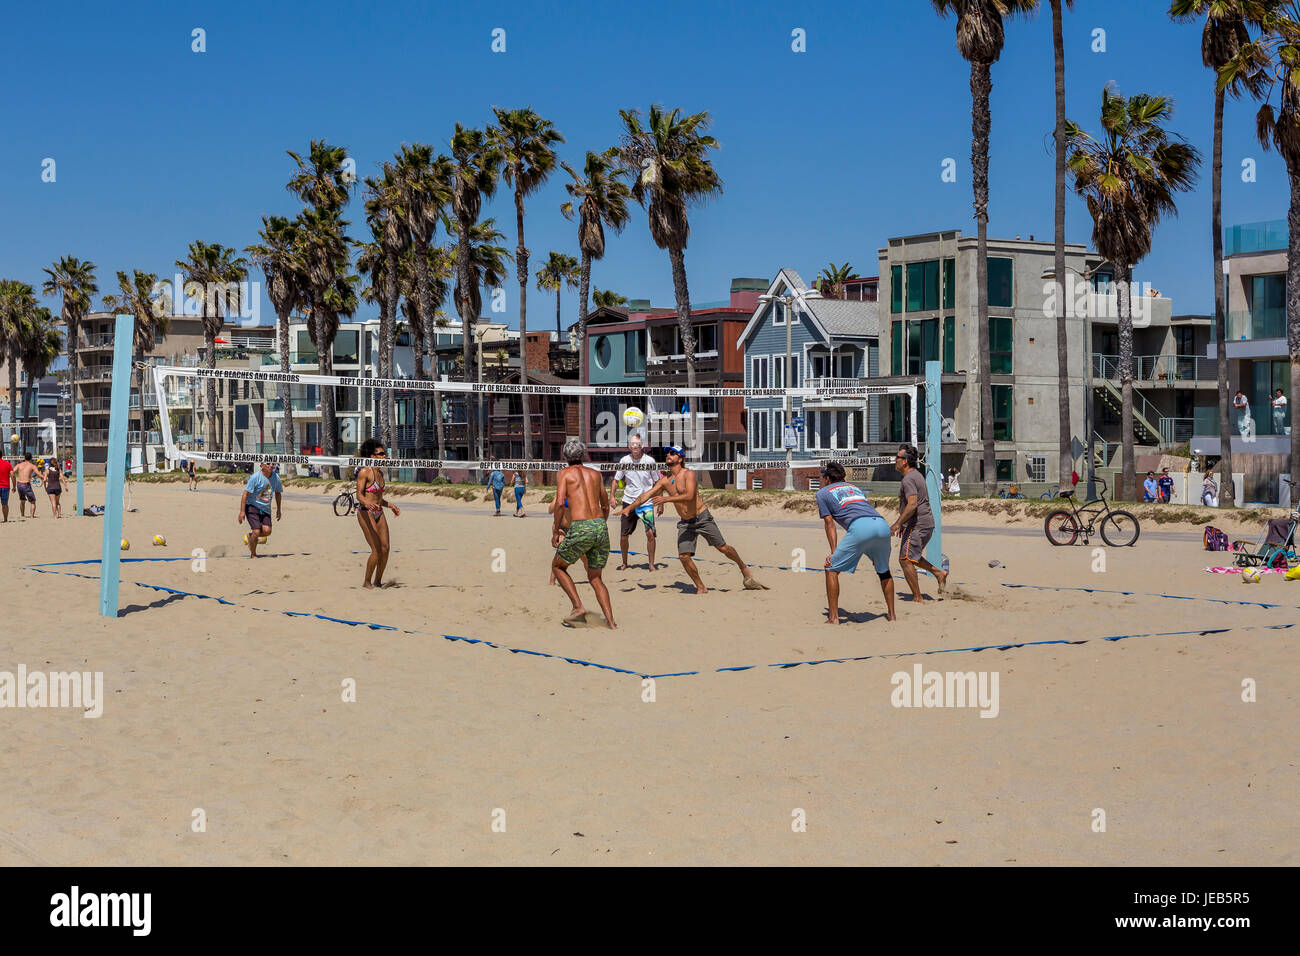 Les gens, les joueurs de volley-ball, jouer au beach-volley, beach volley-ball, beach-volley, Venice Beach, Venice, Los Angeles, Californie Banque D'Images